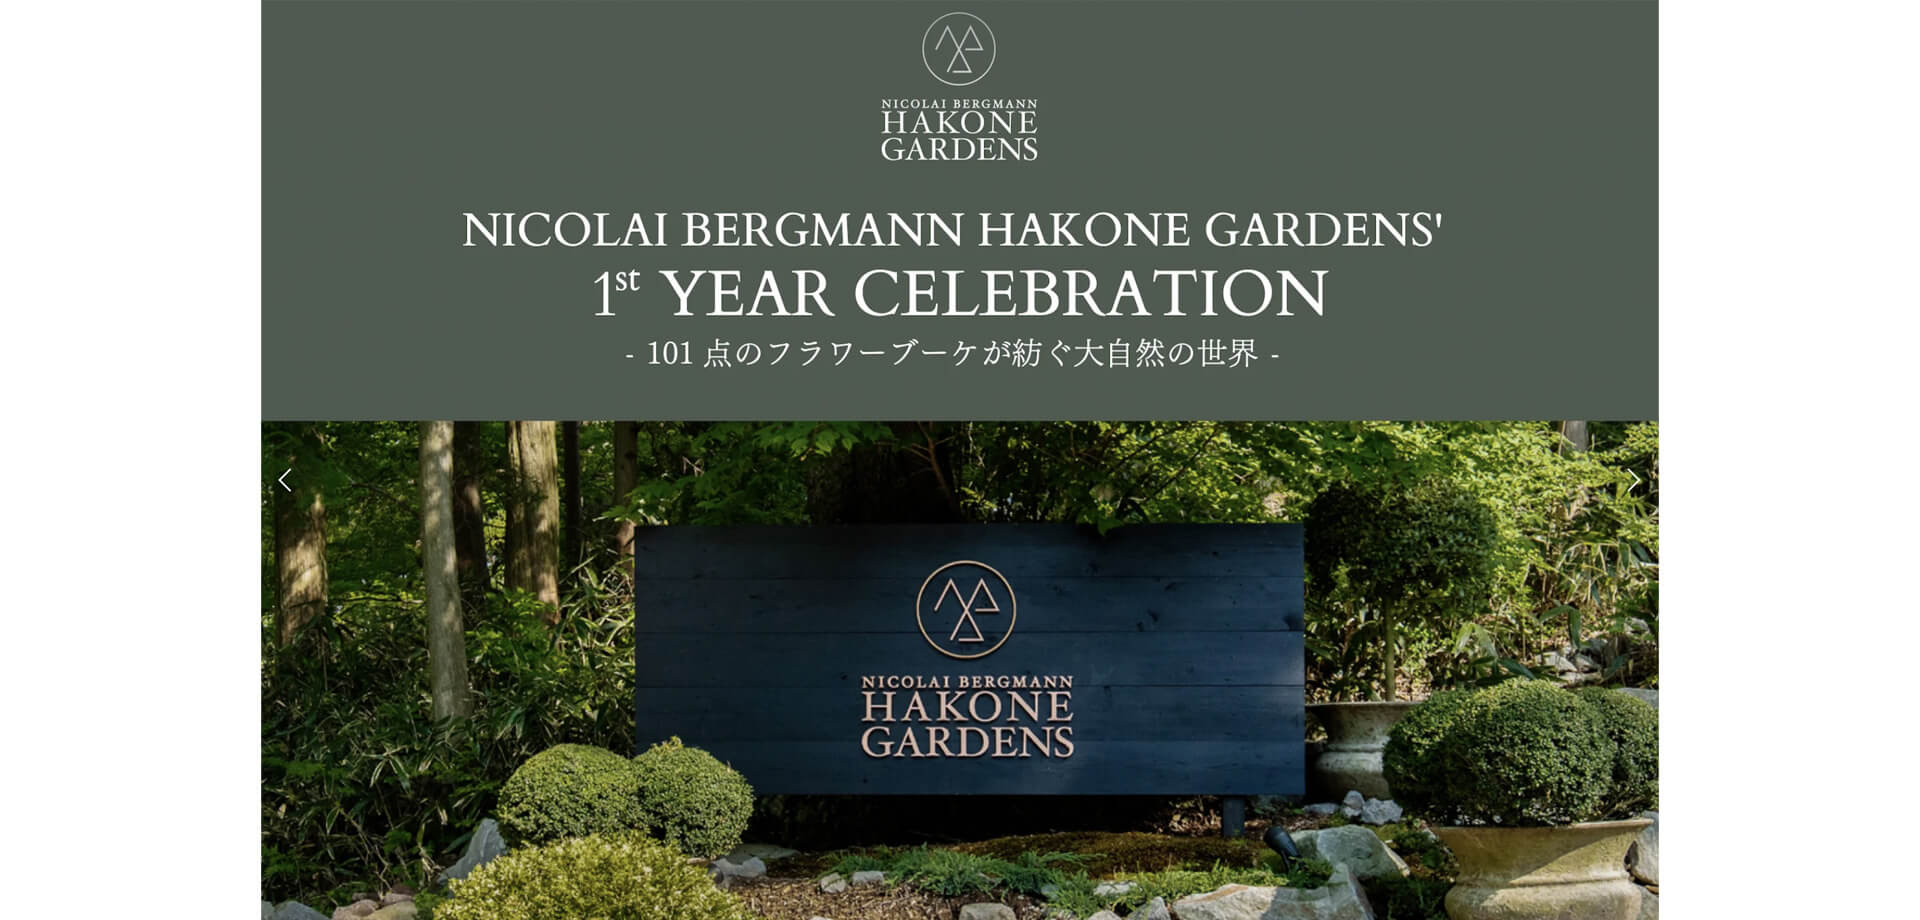 ニコライ バーグマン 箱根 ガーデンズ NICOLAI BERGMANN HAKONE GARDENS’ 1ST YEAR CELEBRATION - 101点のフラワーブーケが紡ぐ大自然の世界-